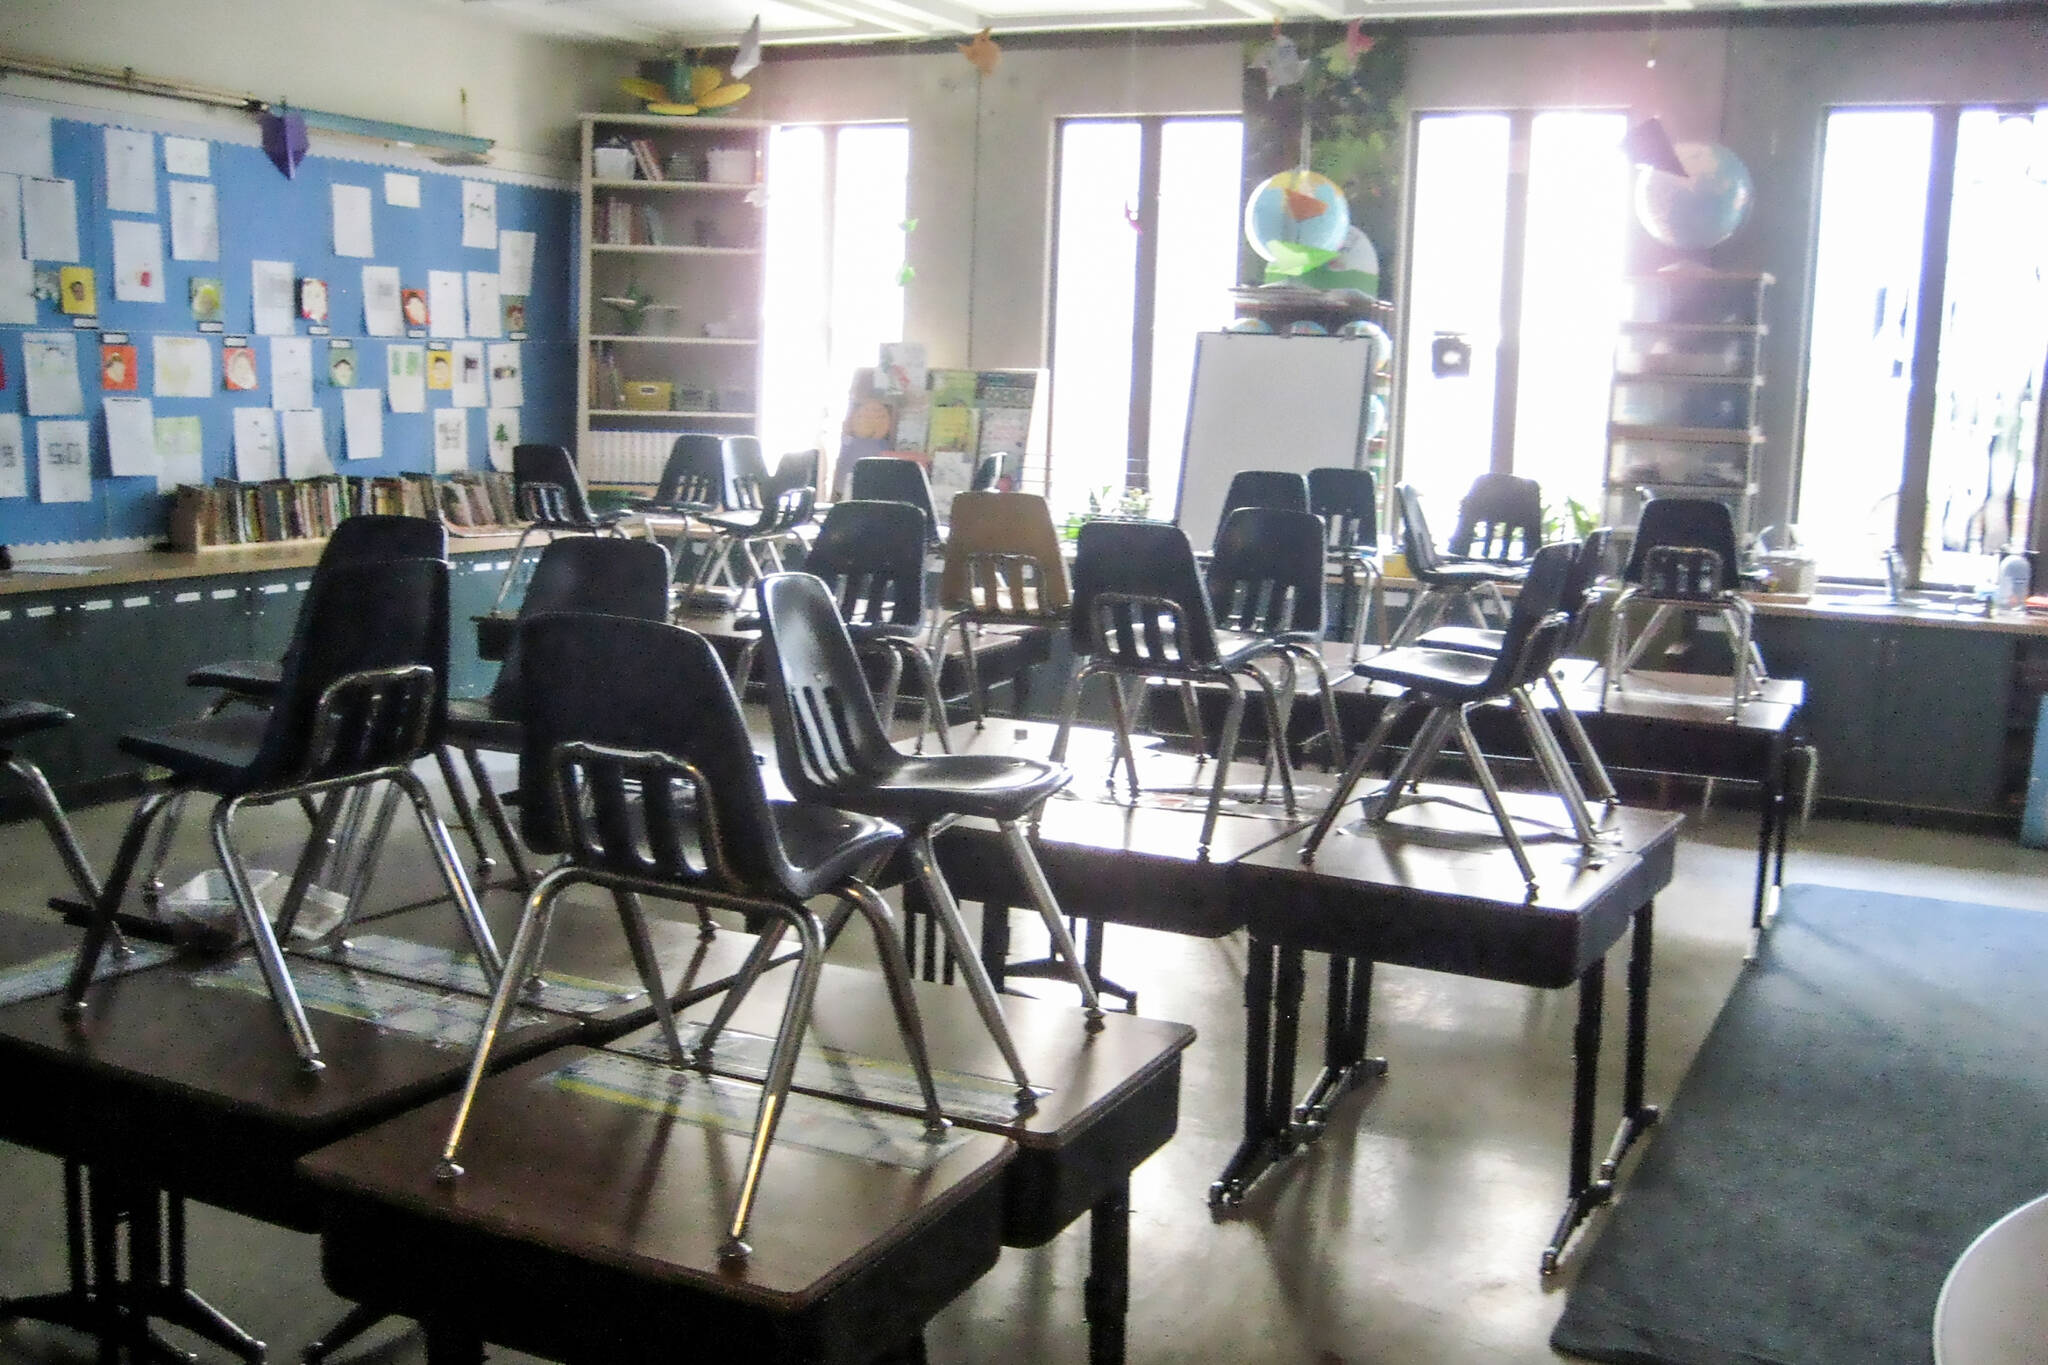 ontario schools closed indefinitely